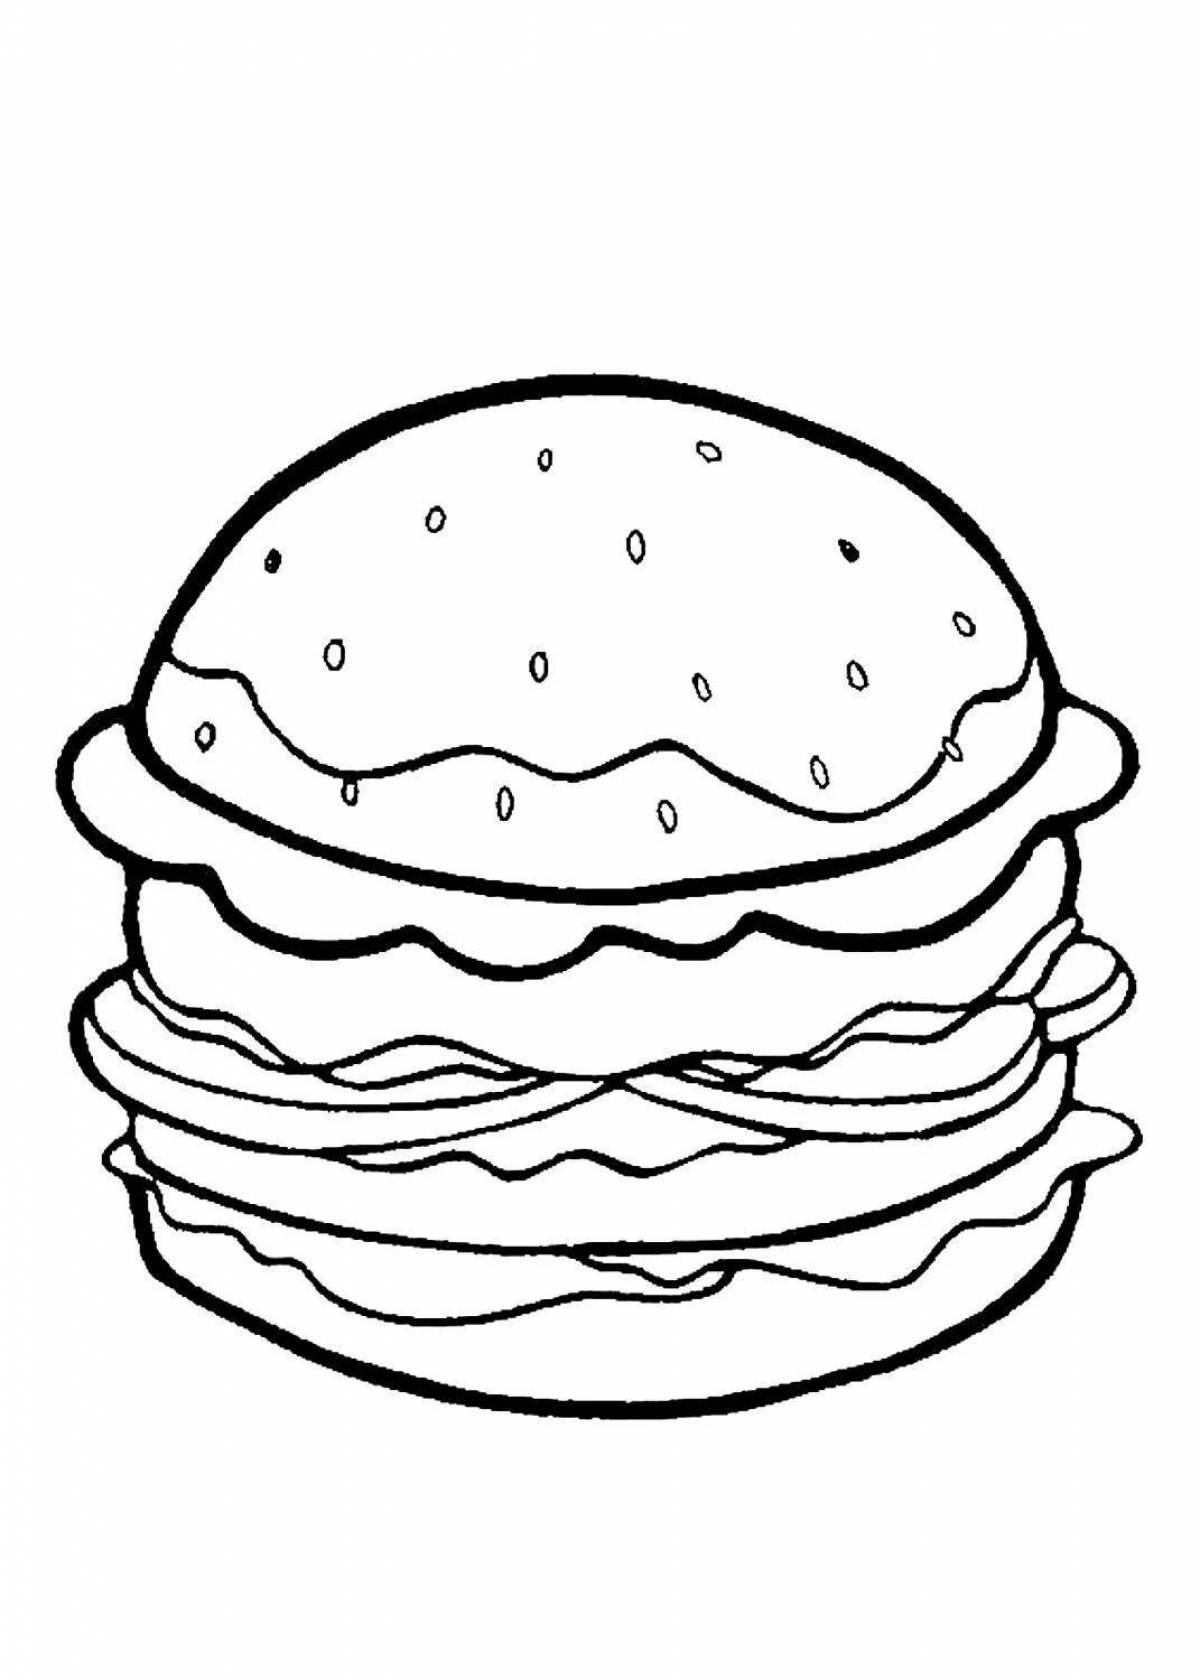 Fun hamburger coloring book for kids